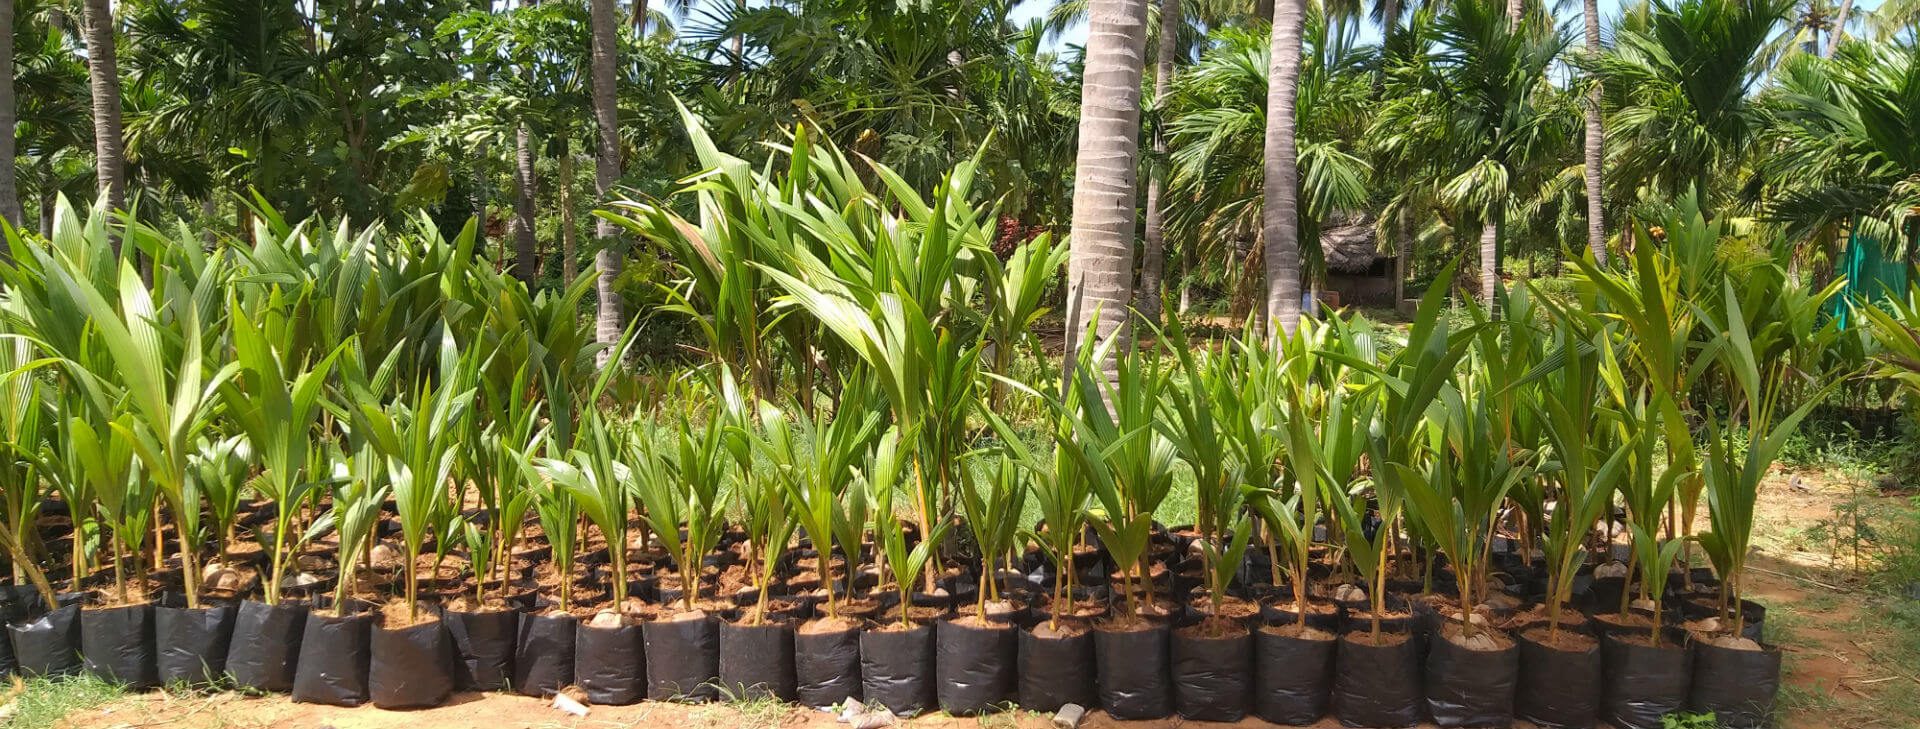 DxT - Dwarf x Tall Coconut Plants